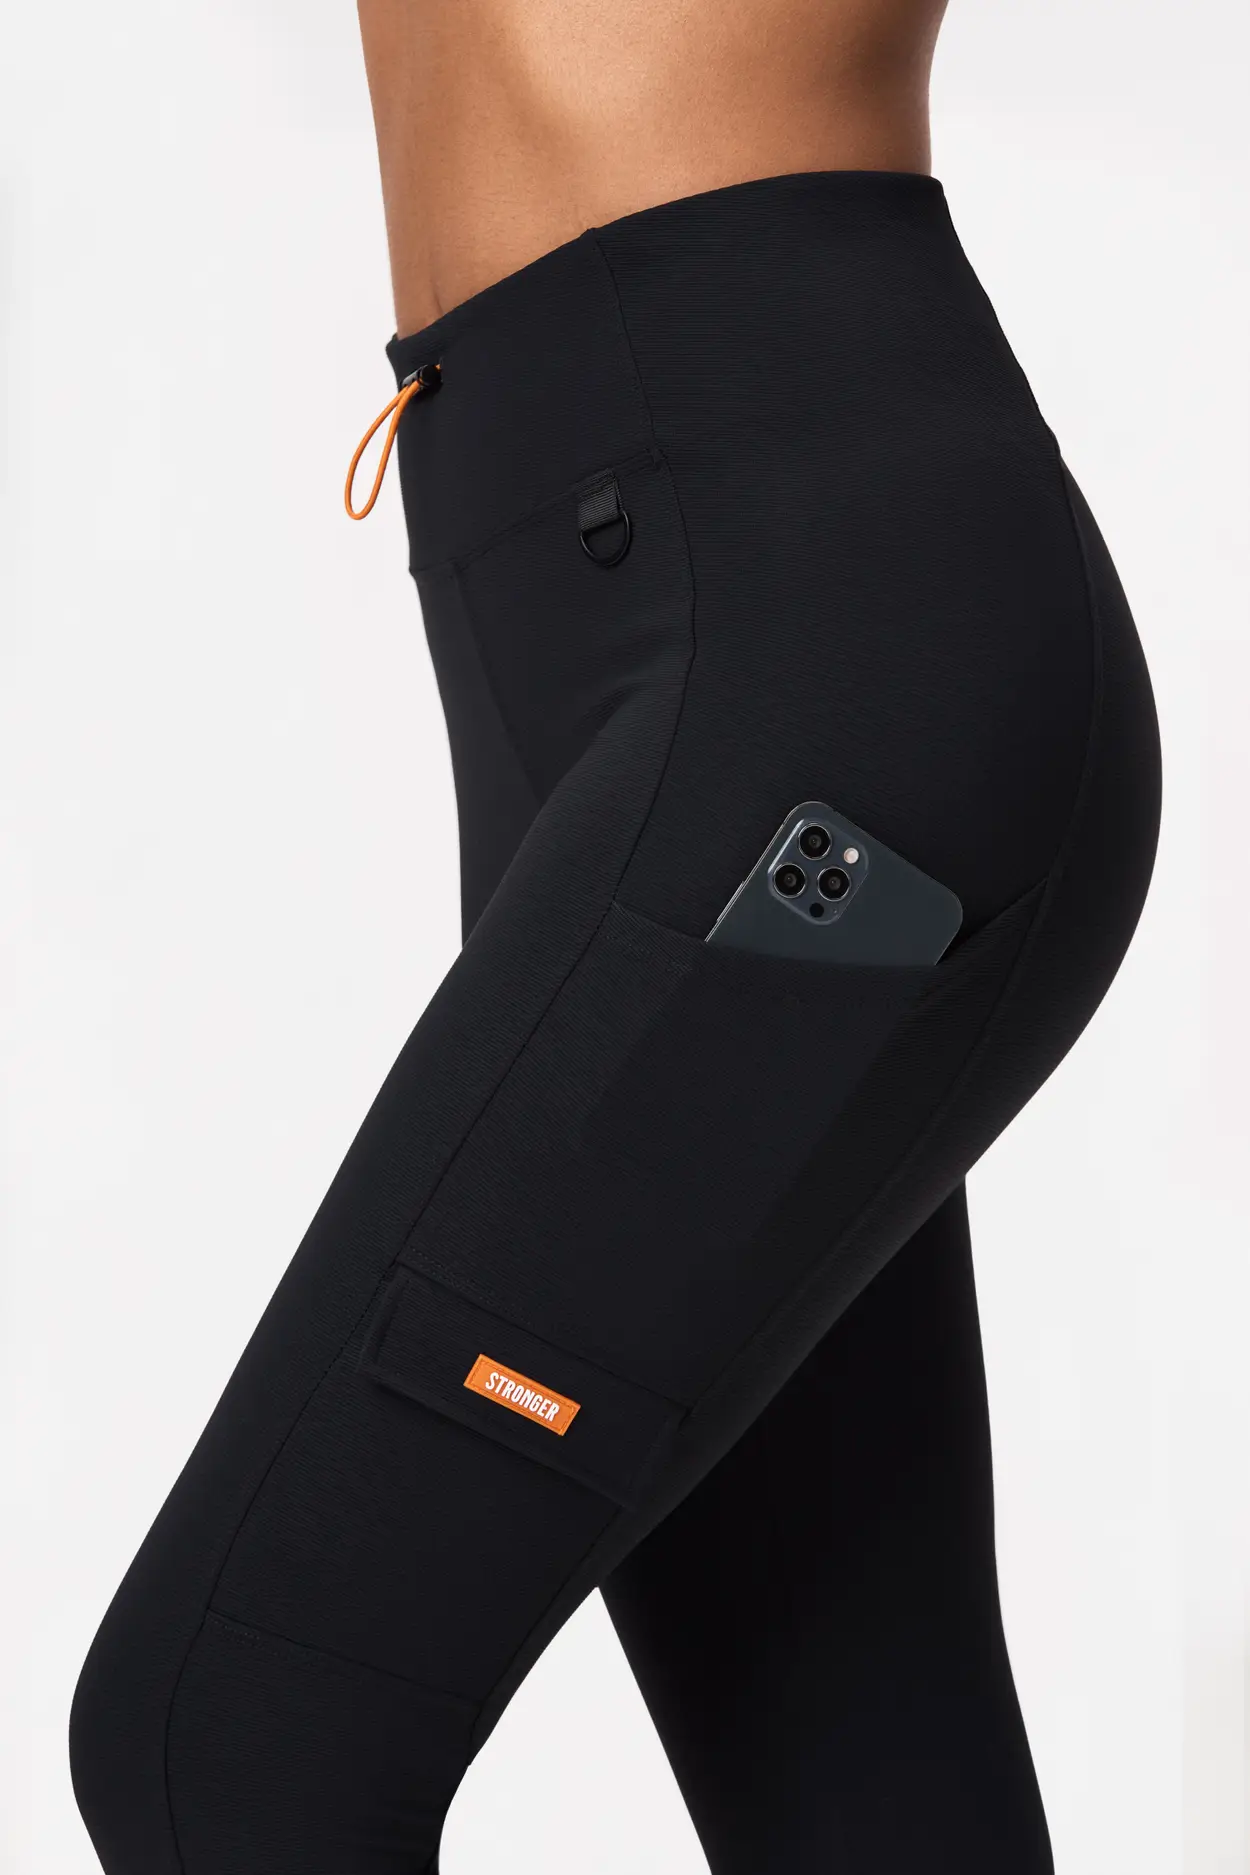 Staple leggings  Black – Jagrrr Active